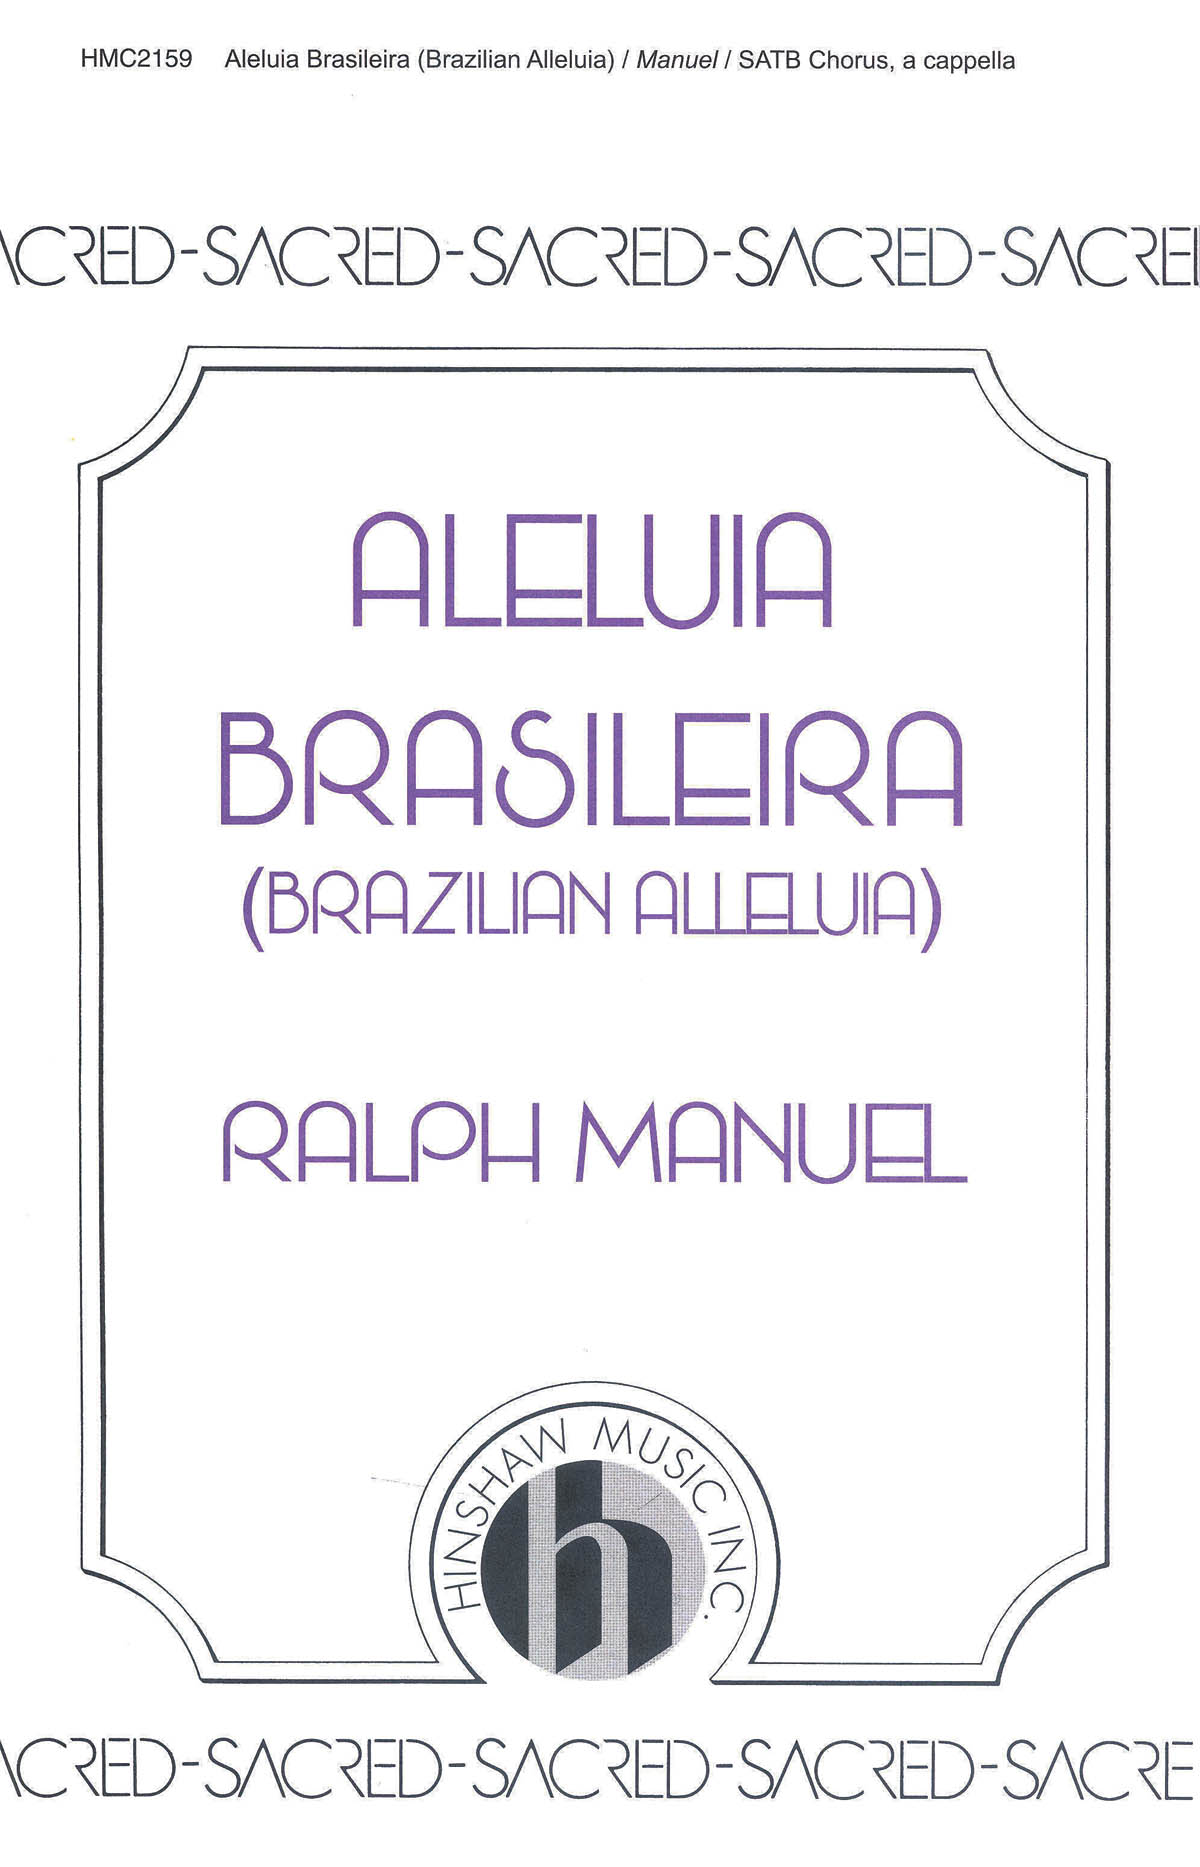 Ralph Manuel: Brazilian Alleluia (Aleluia Brasileira): SATB: Vocal Score